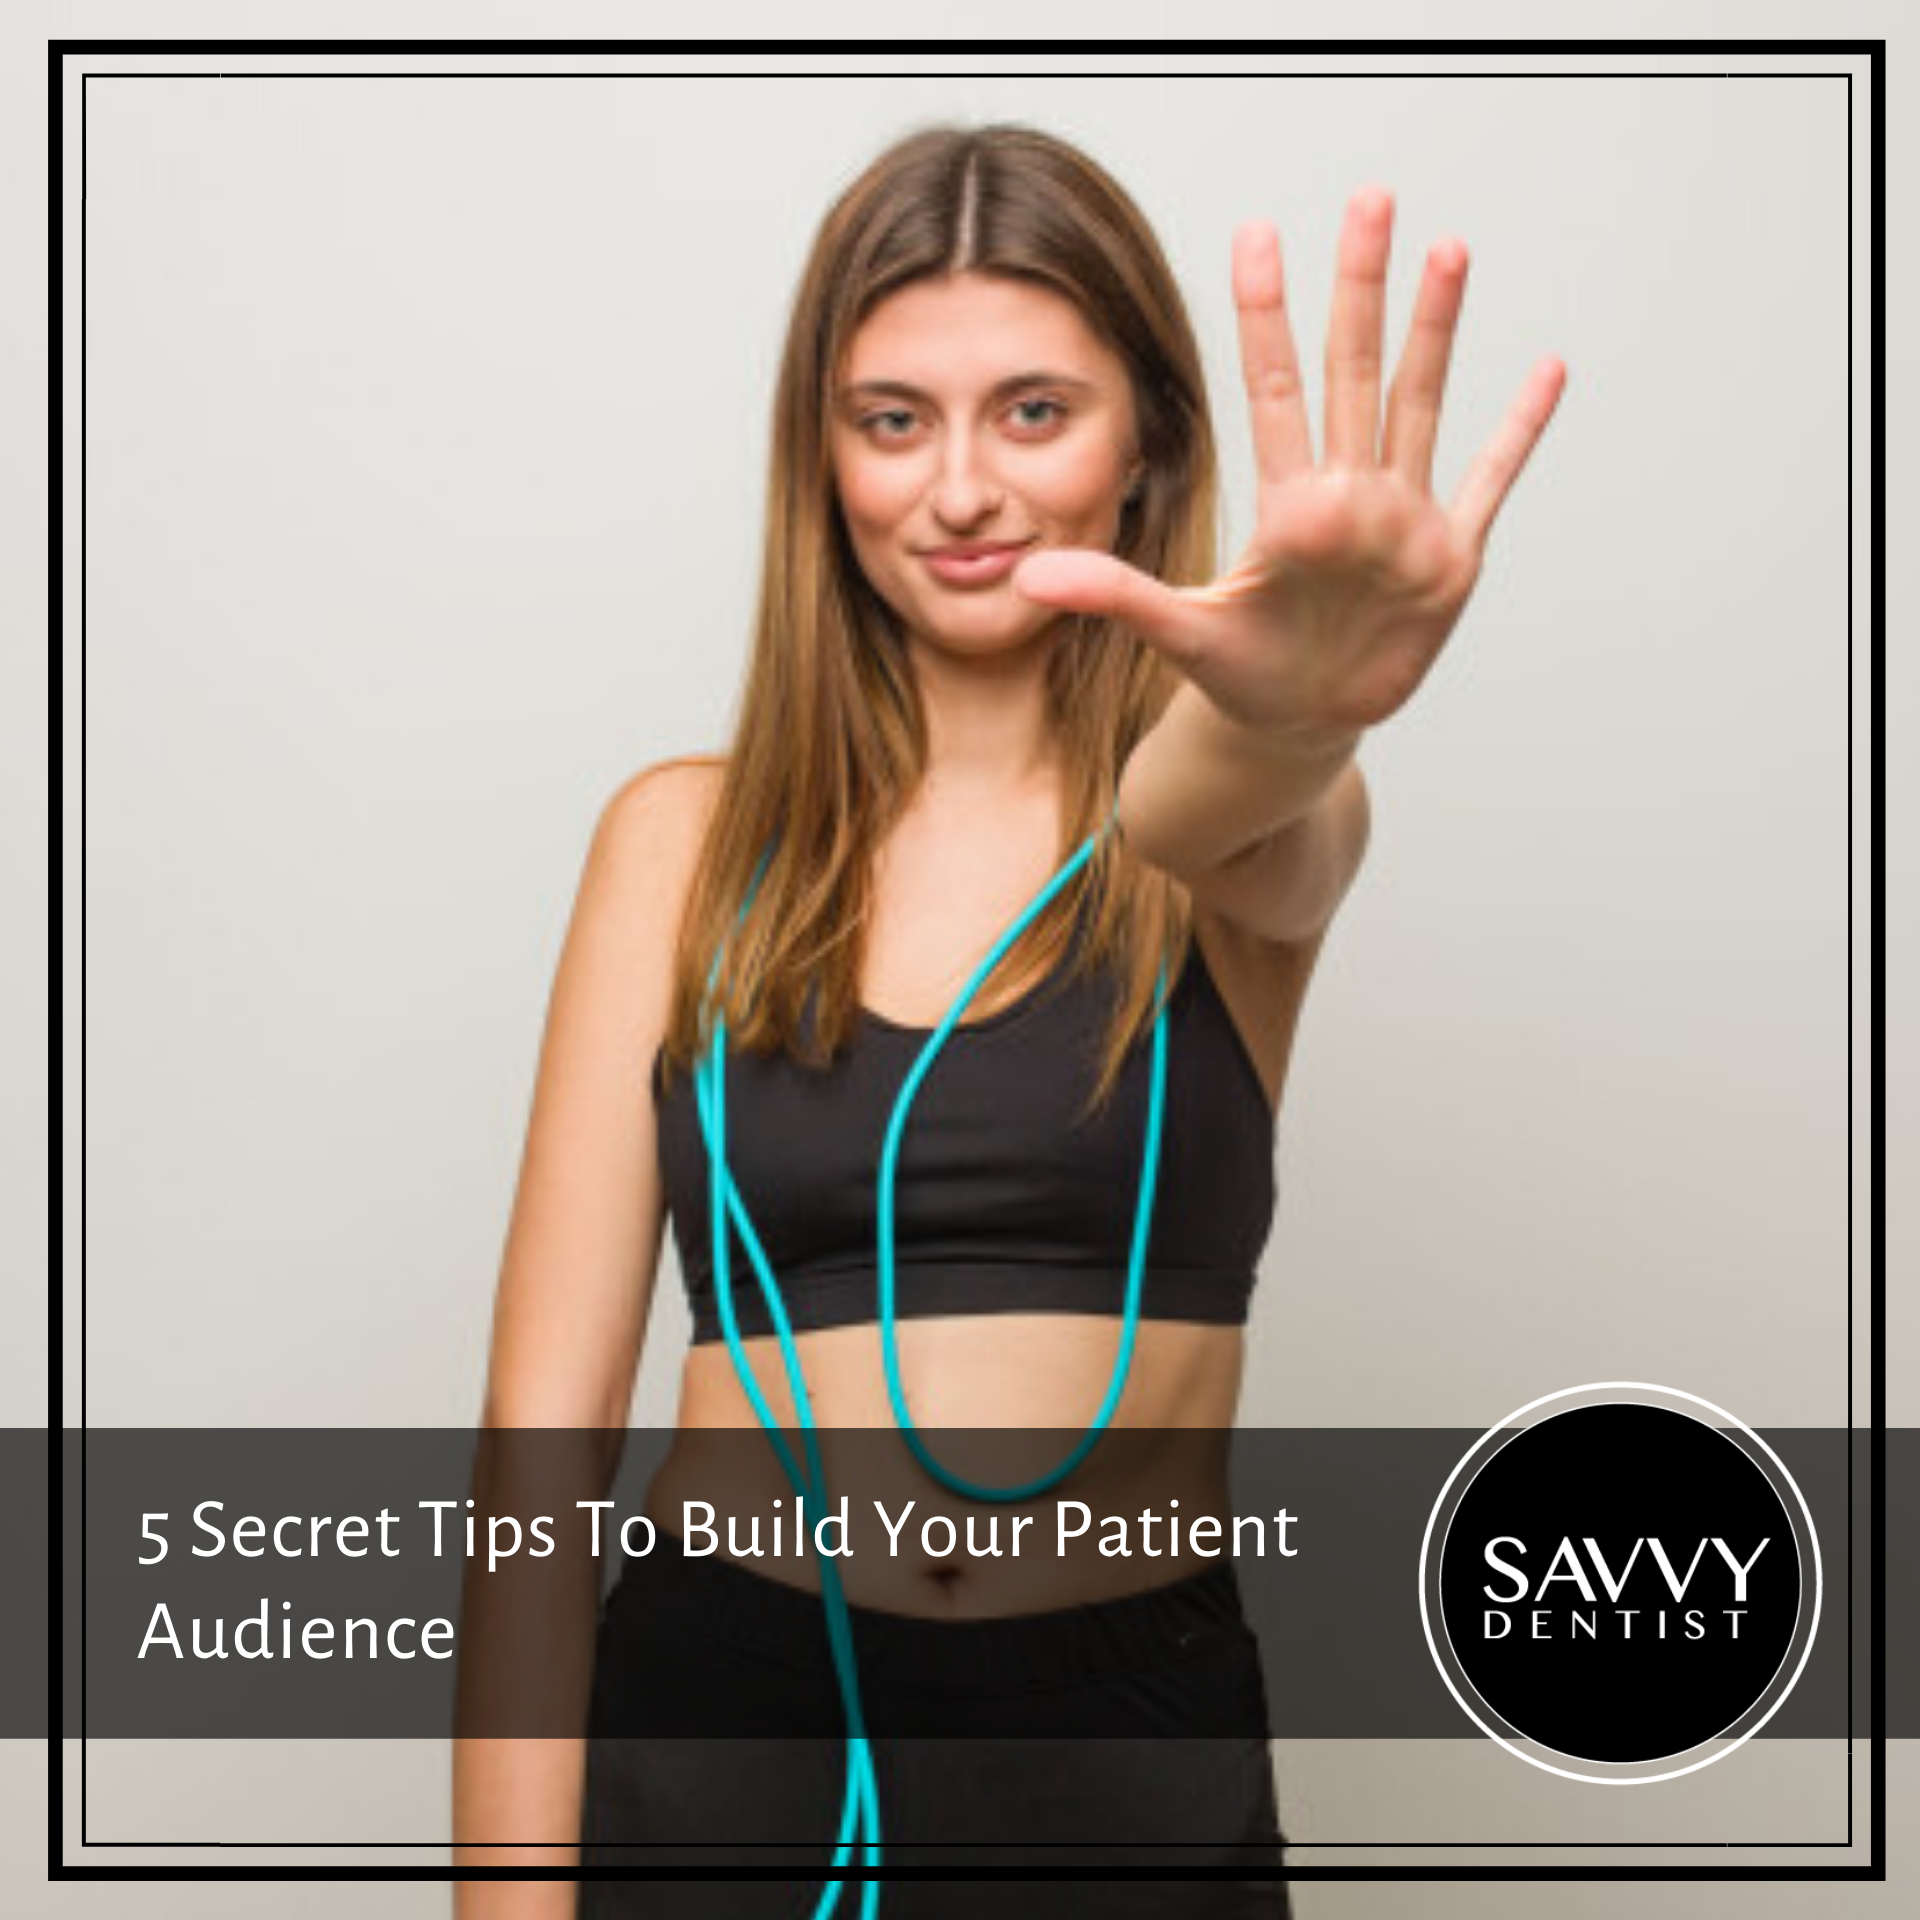 5 Secret Tips To Build Your Patient Audience